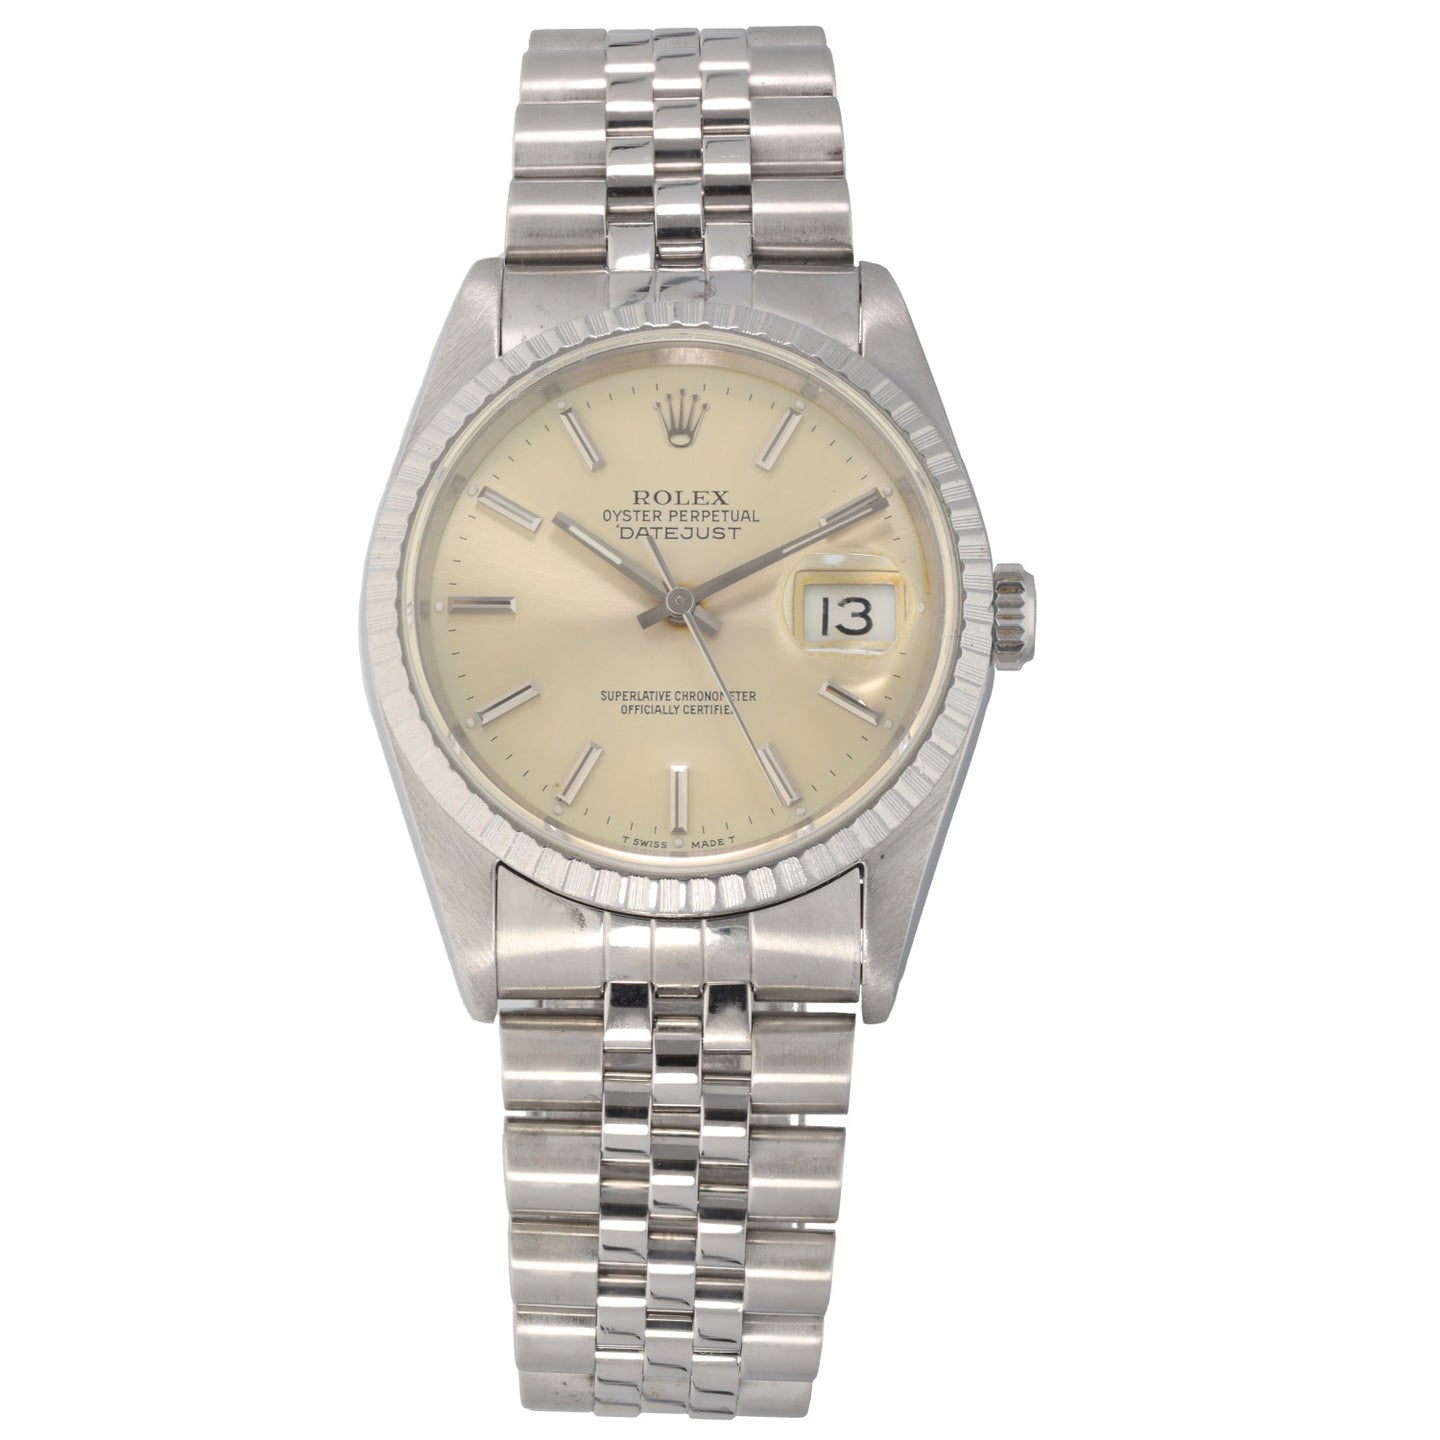 Rolex Datejust 16220 36mm Stainless Steel Watch